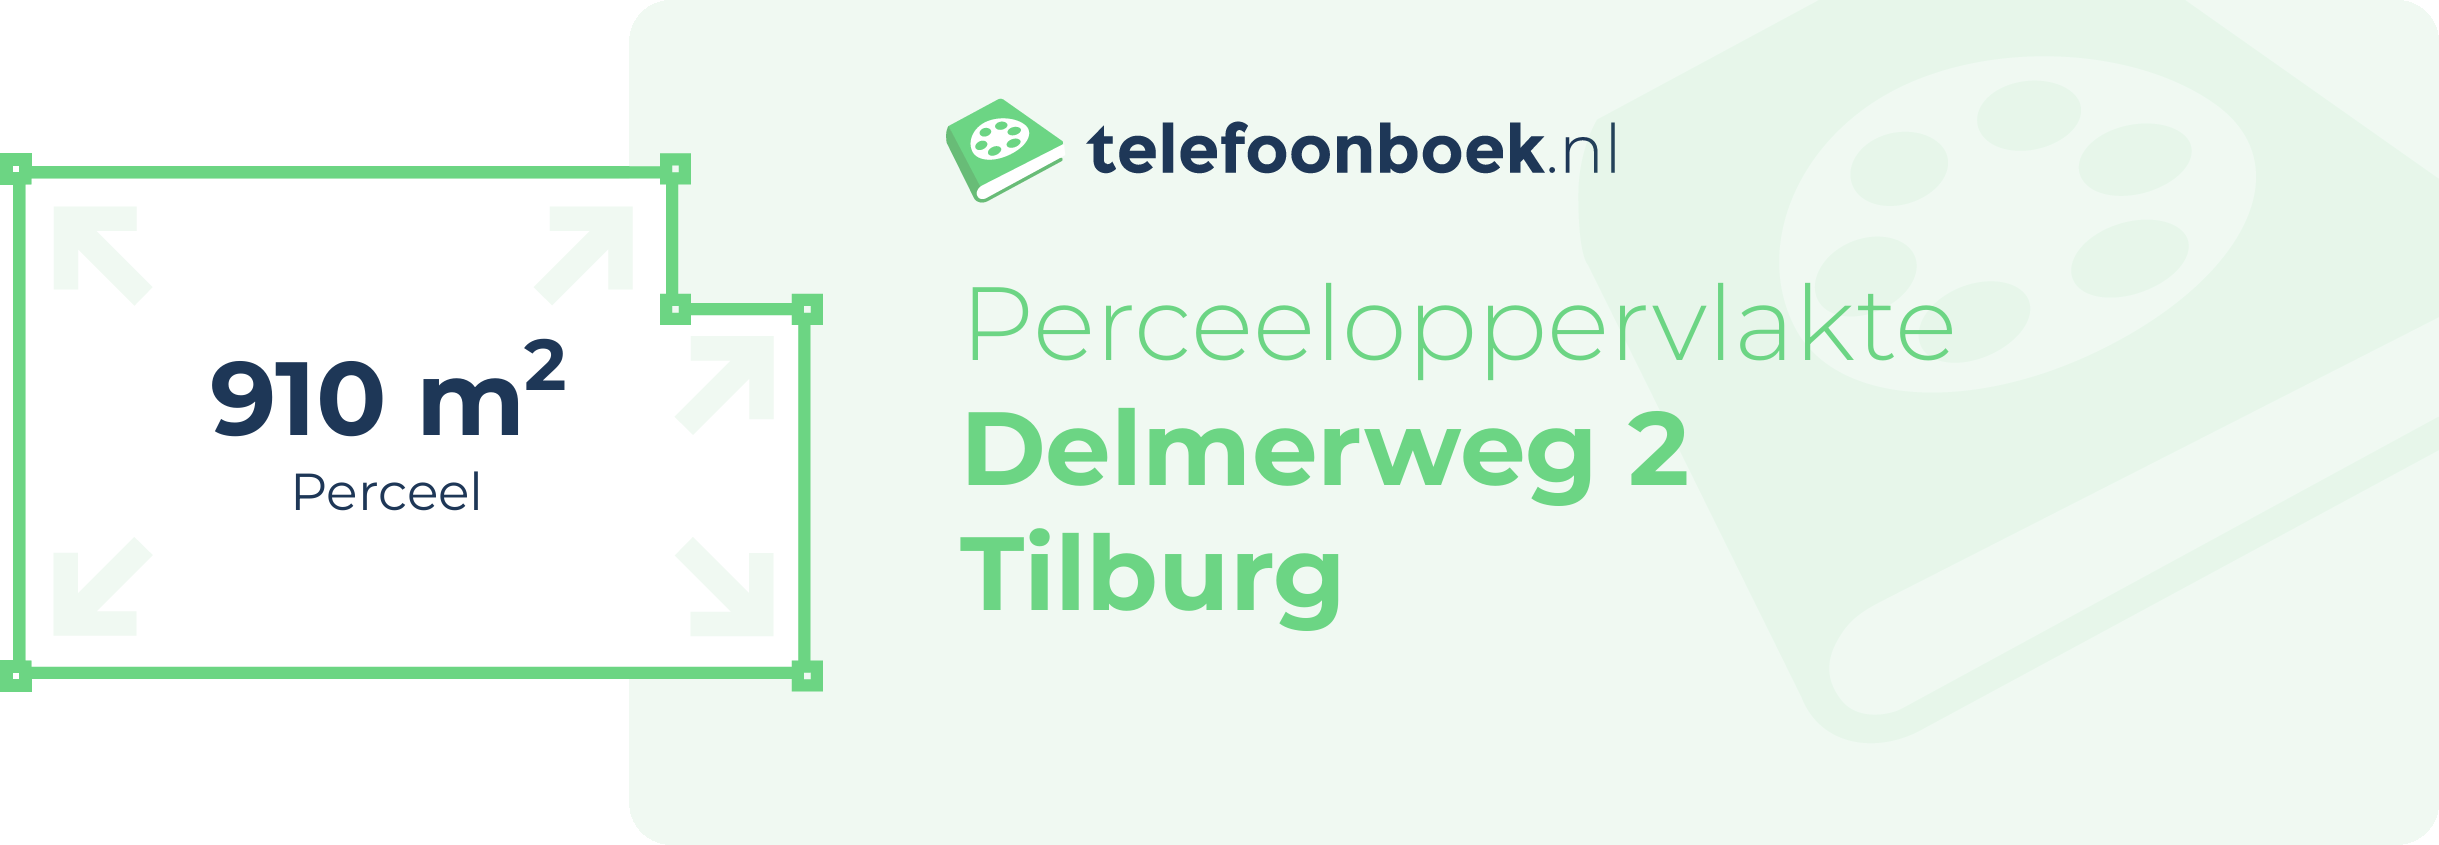 Perceeloppervlakte Delmerweg 2 Tilburg